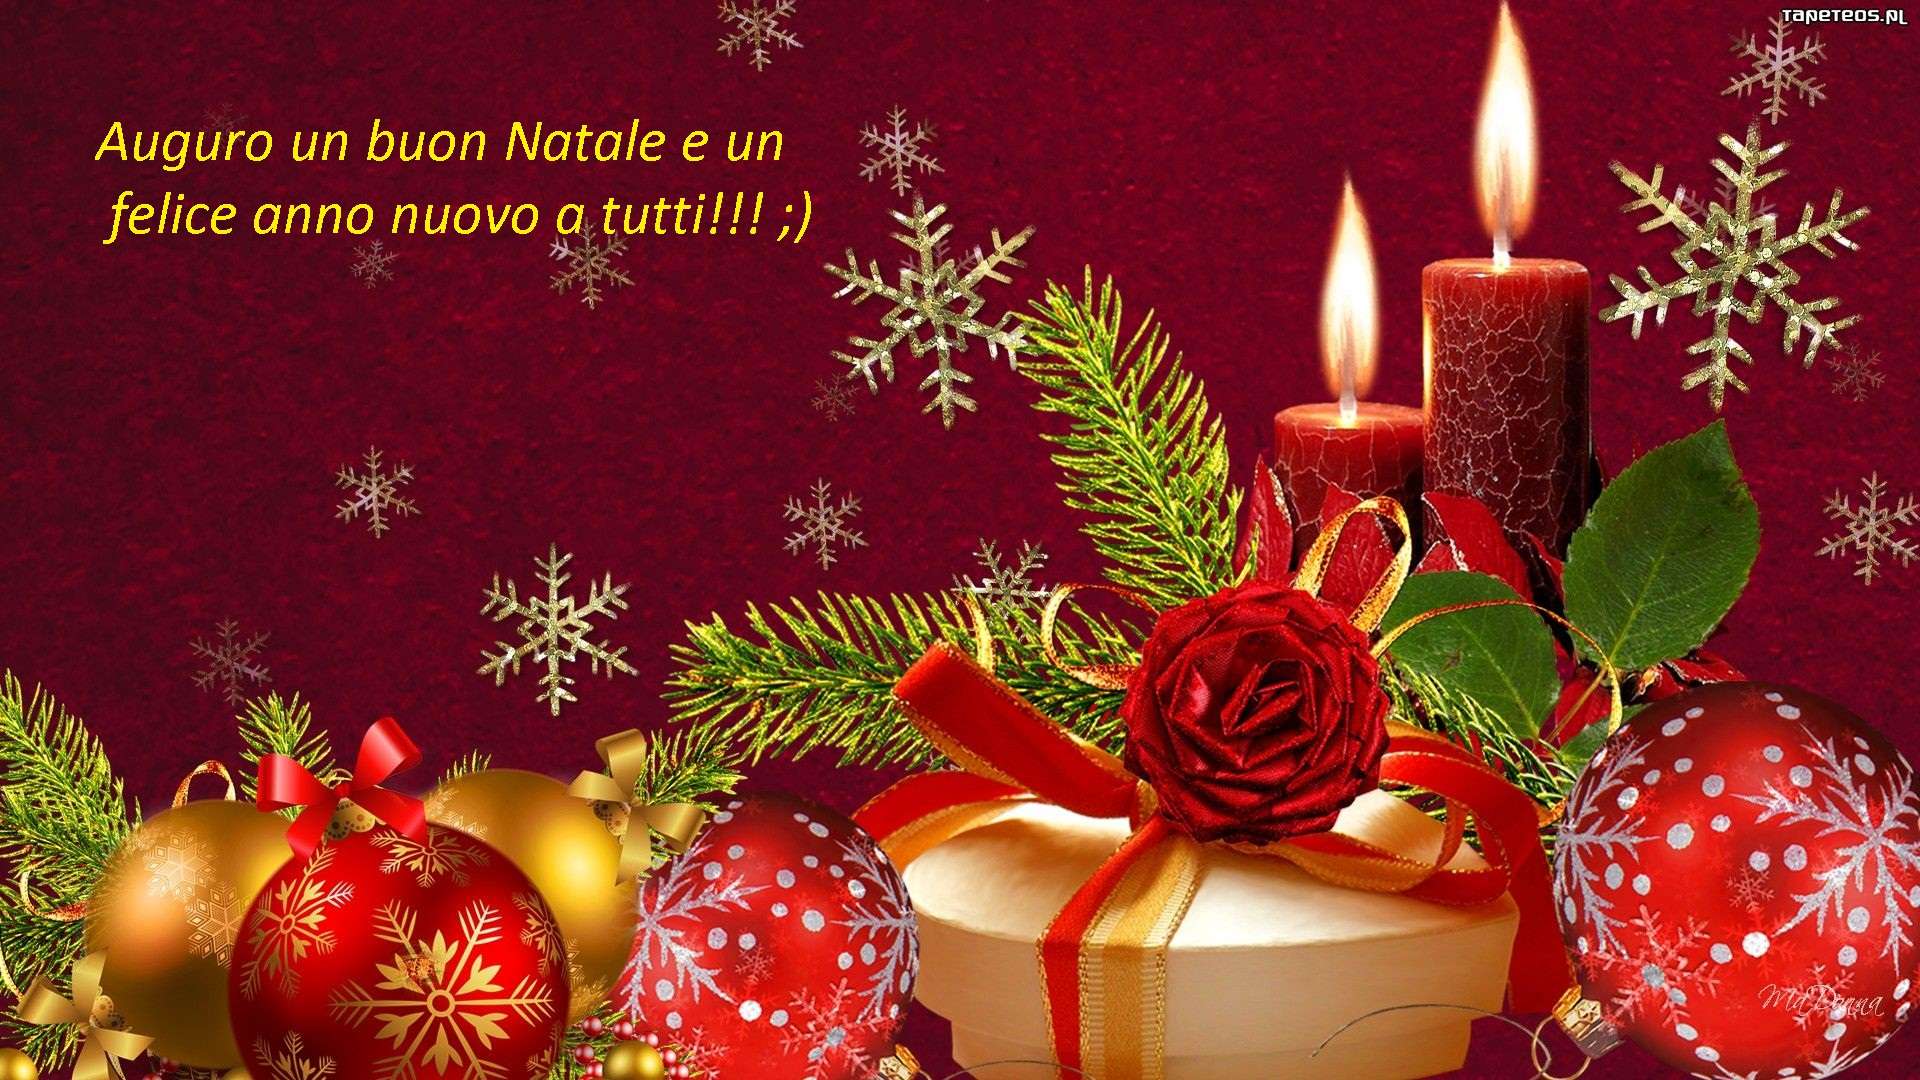 Auguro A Tutti Un Buon Natale.Auguri Di Buon Natale E Felice Anno Nuovo Baronerosso It Forum Modellismo